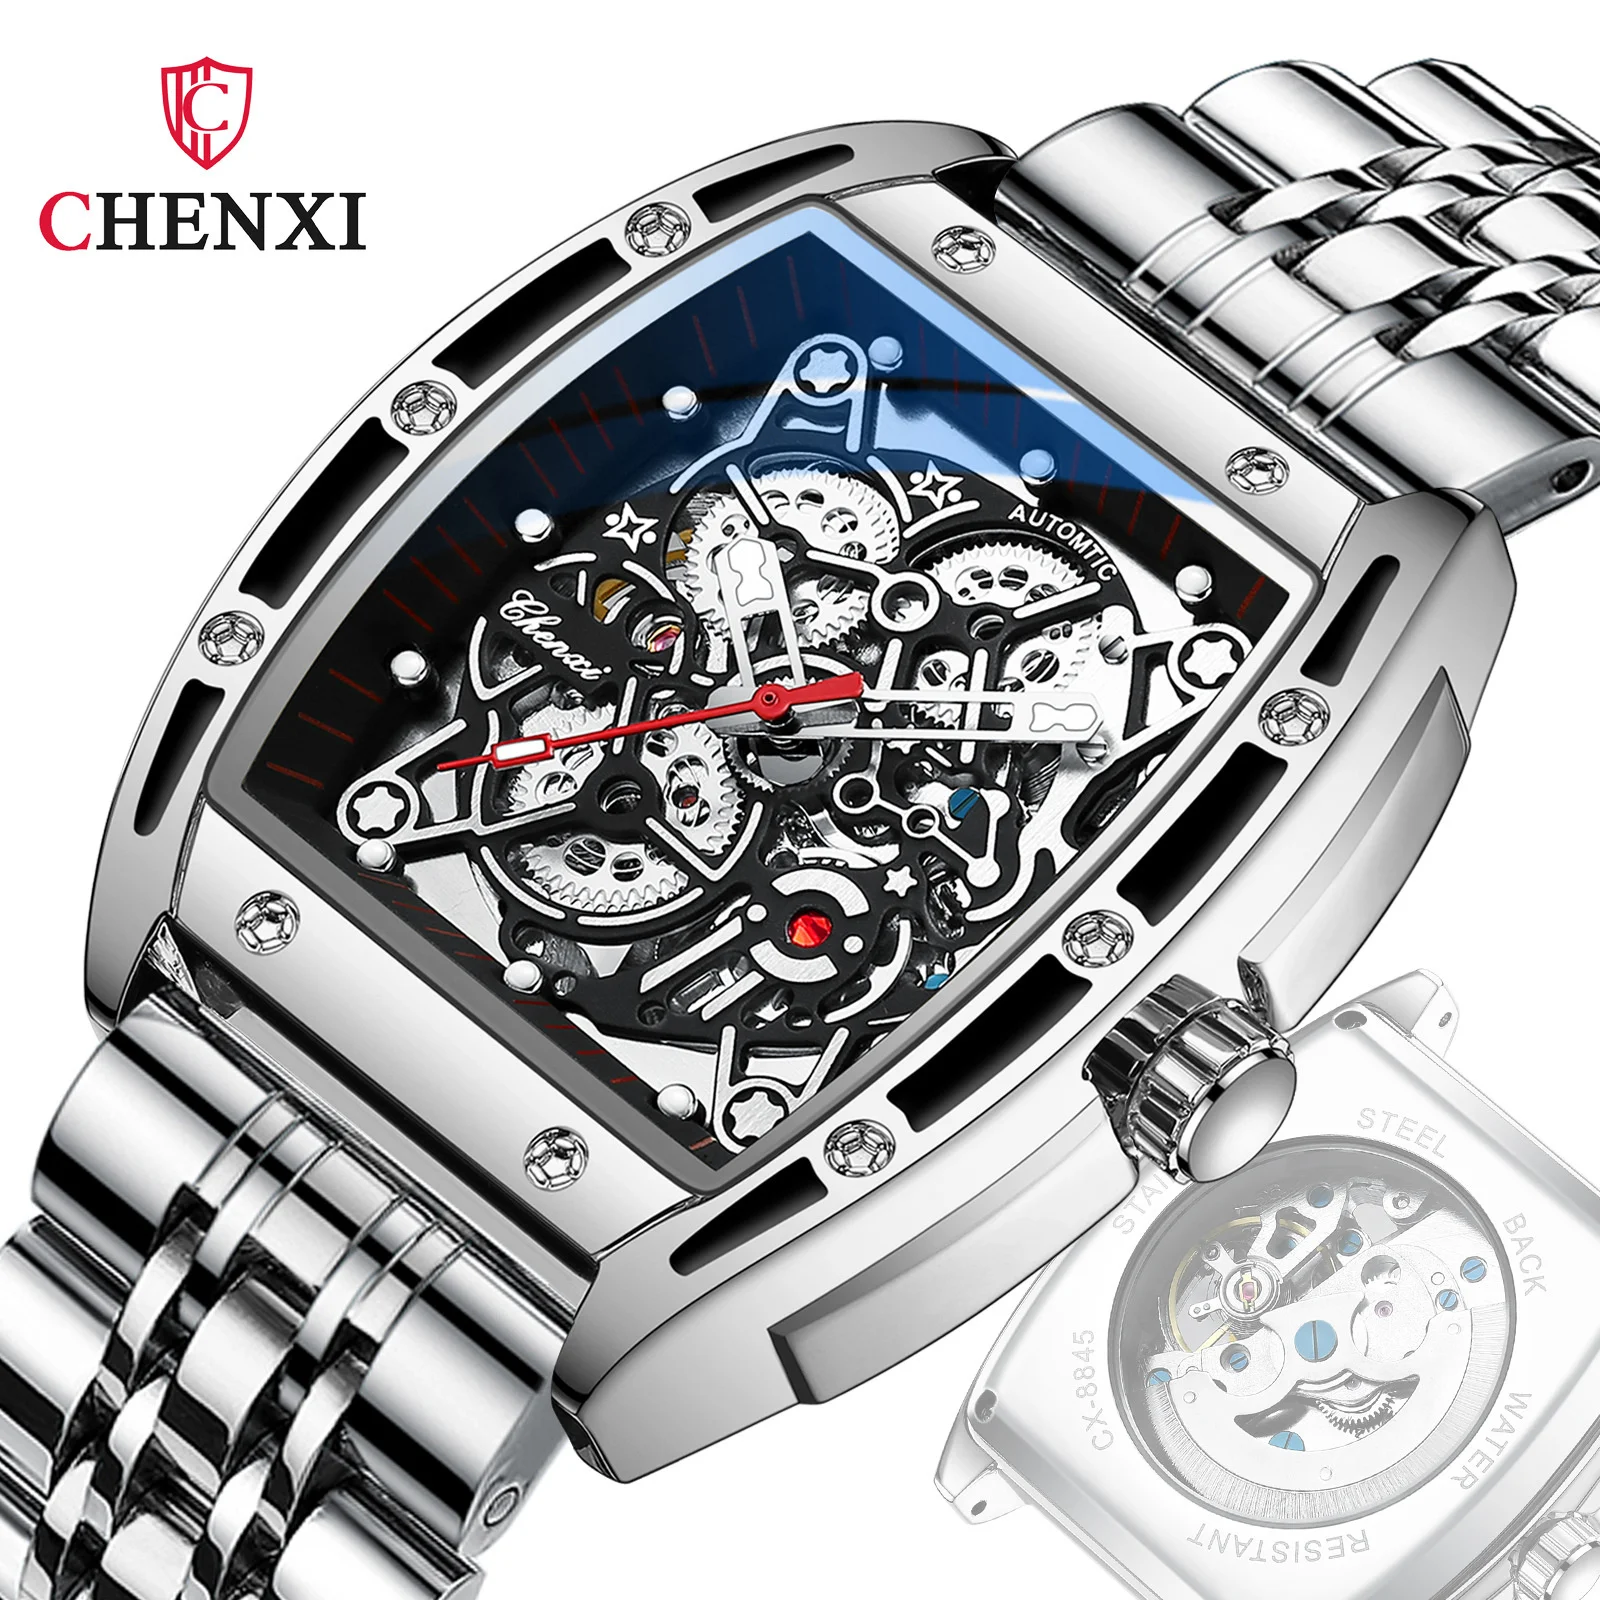 CHENXI 8865 חם מכירה סטיות זכר חלול מכאניים אוטומטיים שעון גברים נירוסטה מפעל שעון יד רלו גבר - 1